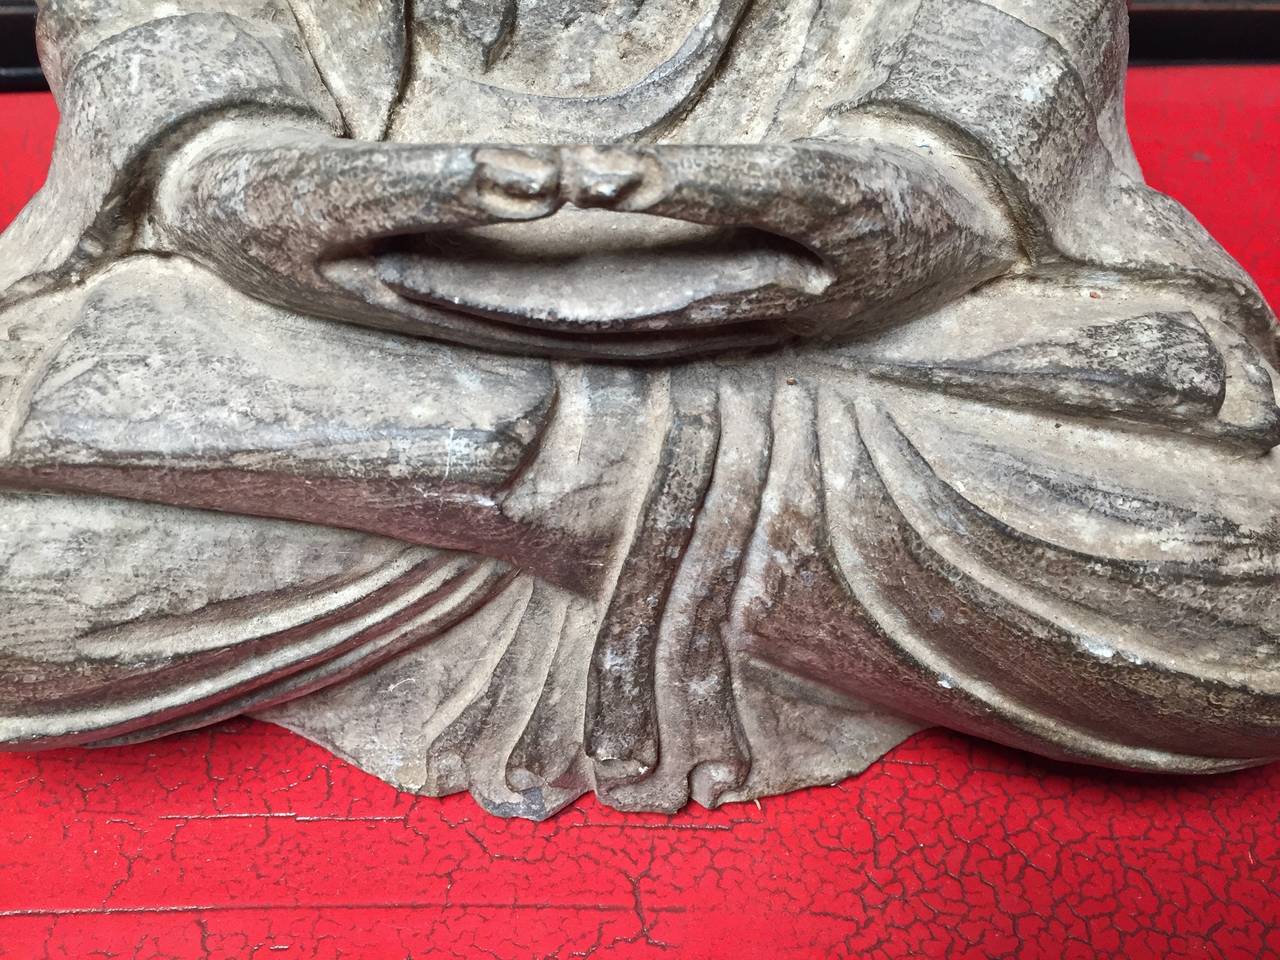 Chinese Carved Stone Buddha